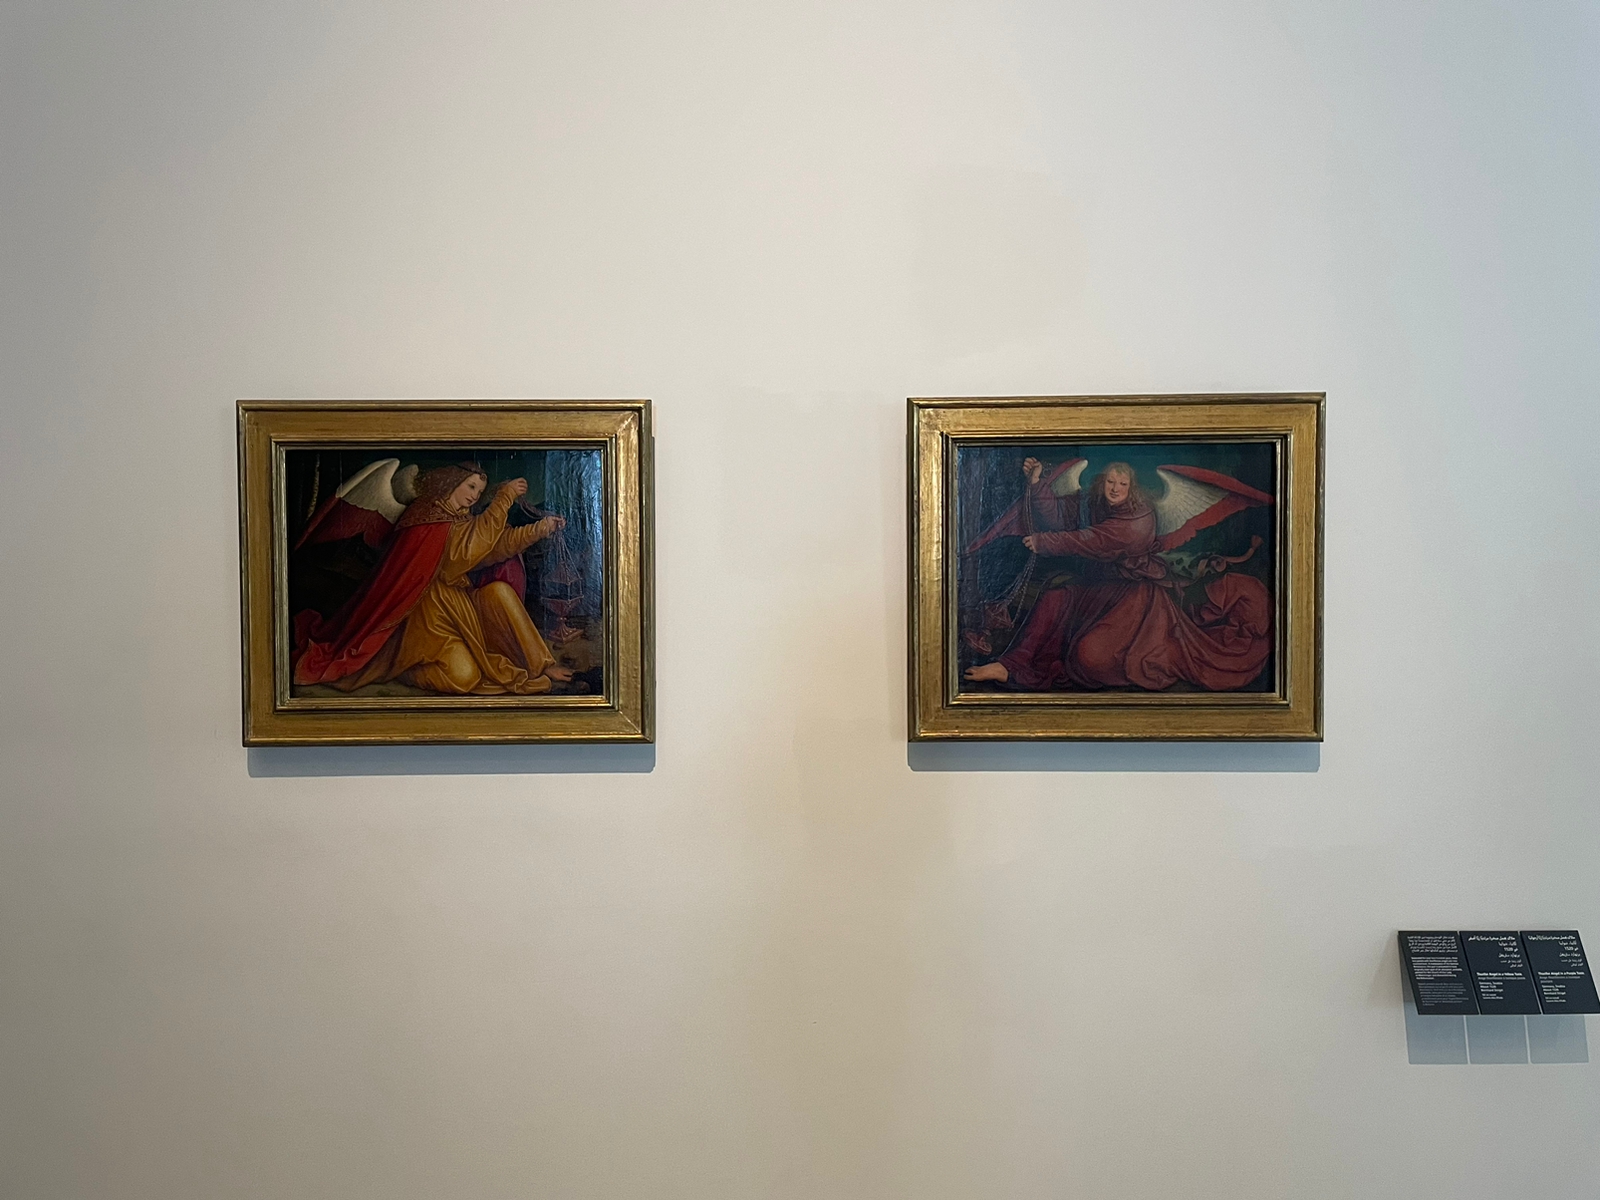 Les Anges thuriféraires de Bernhard Strigel exposés au Louvre d'Abou Dhabi